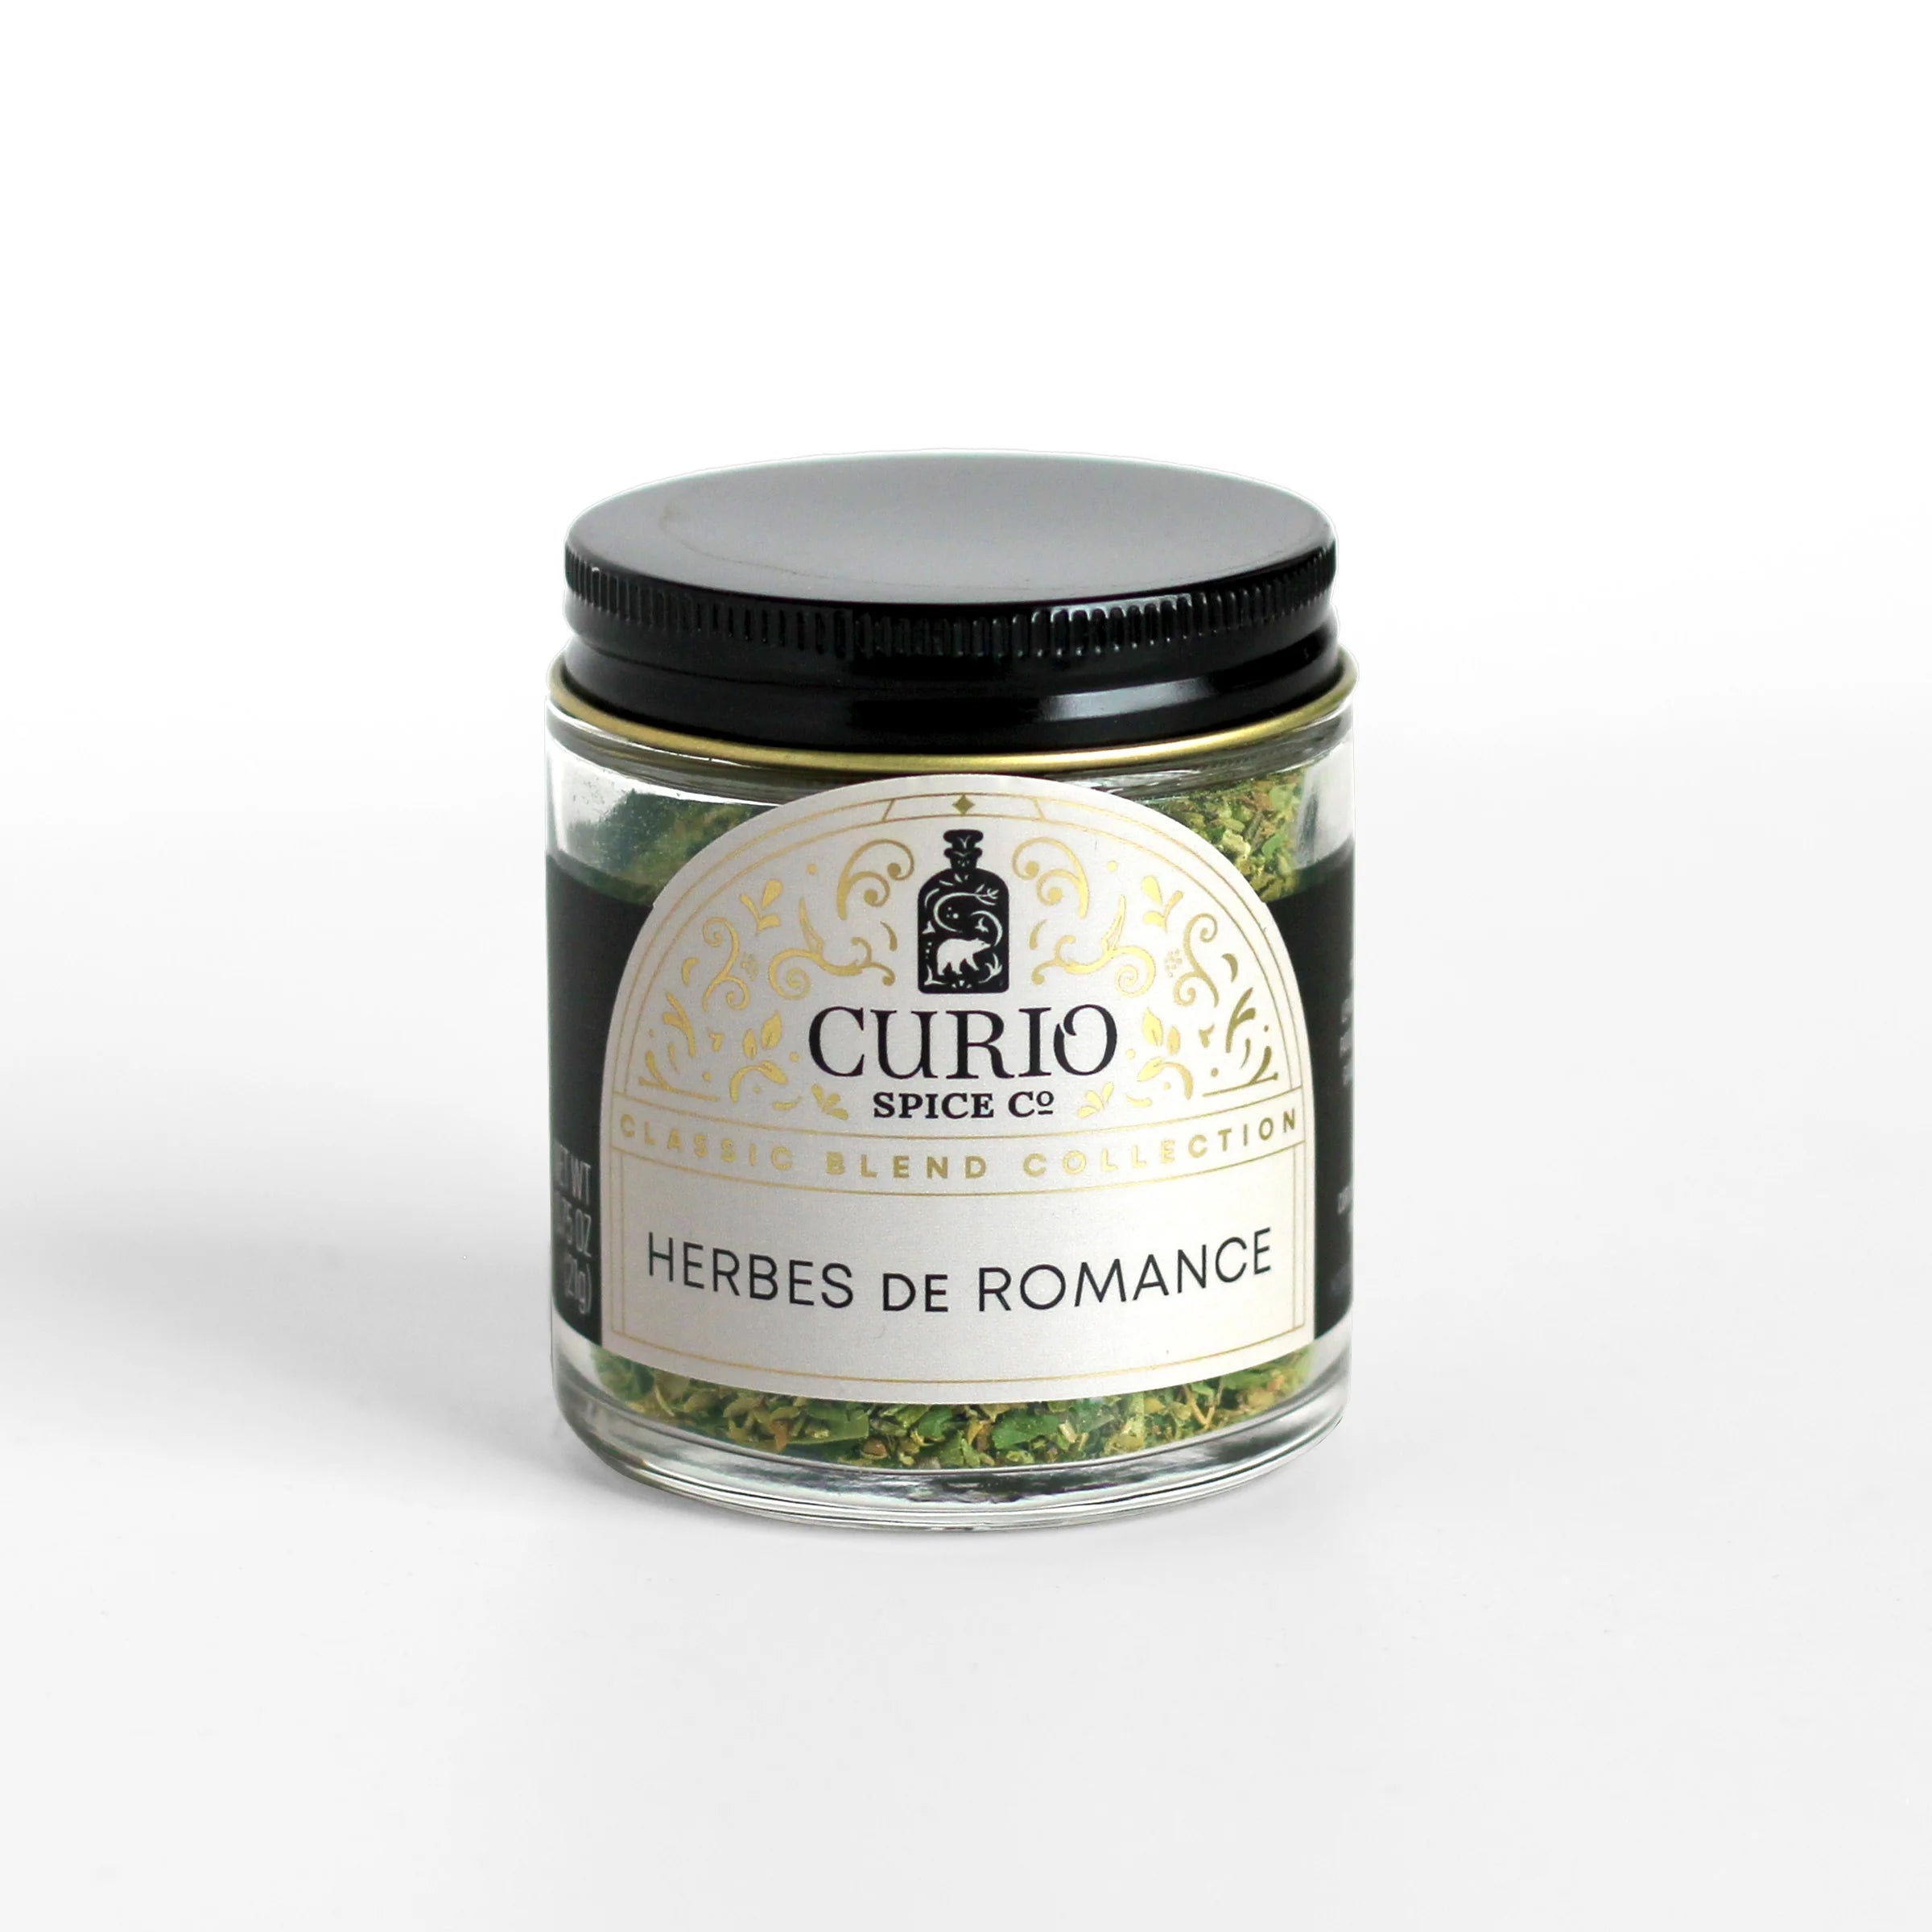 Curio Spice Co Herbs de Romance - Olive Oil Etcetera